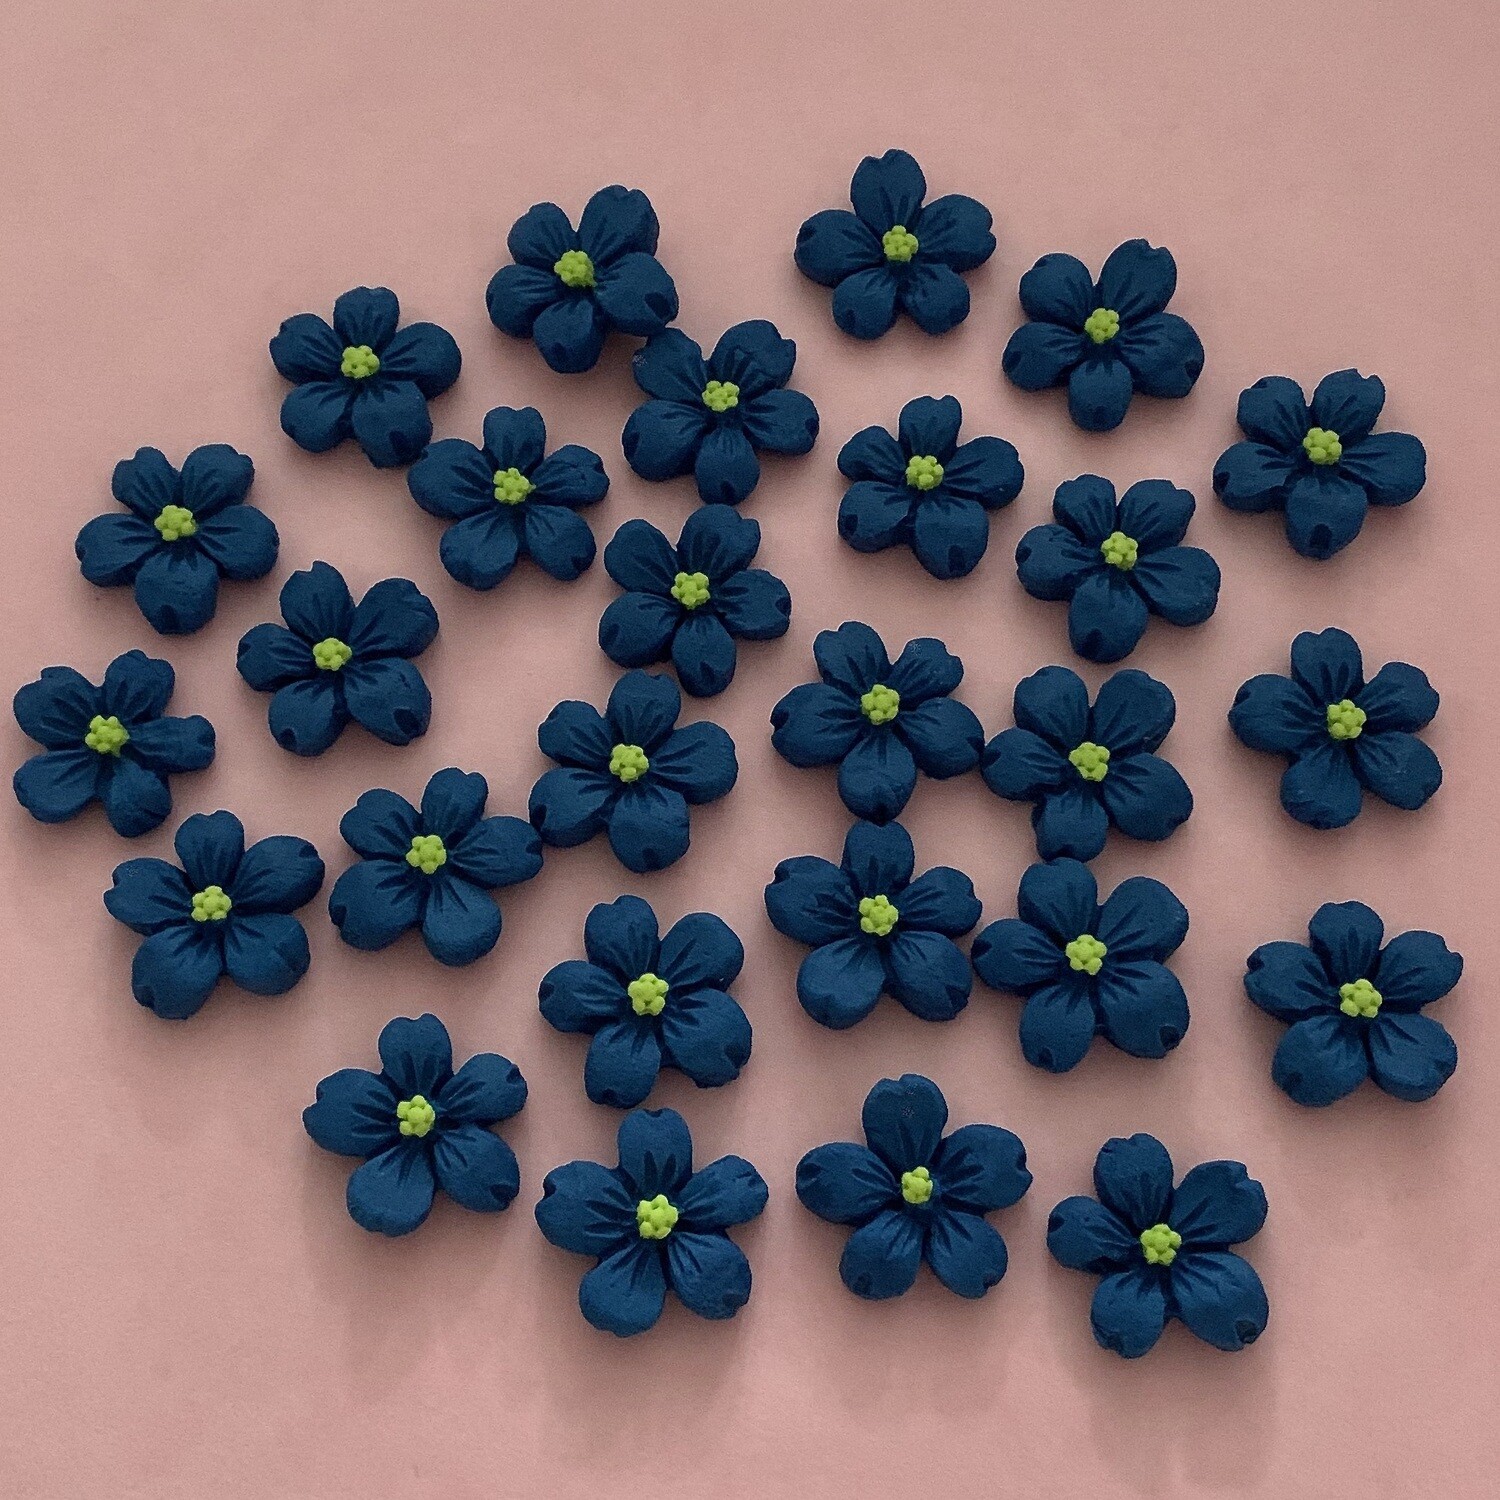 Royal Blue Flowers